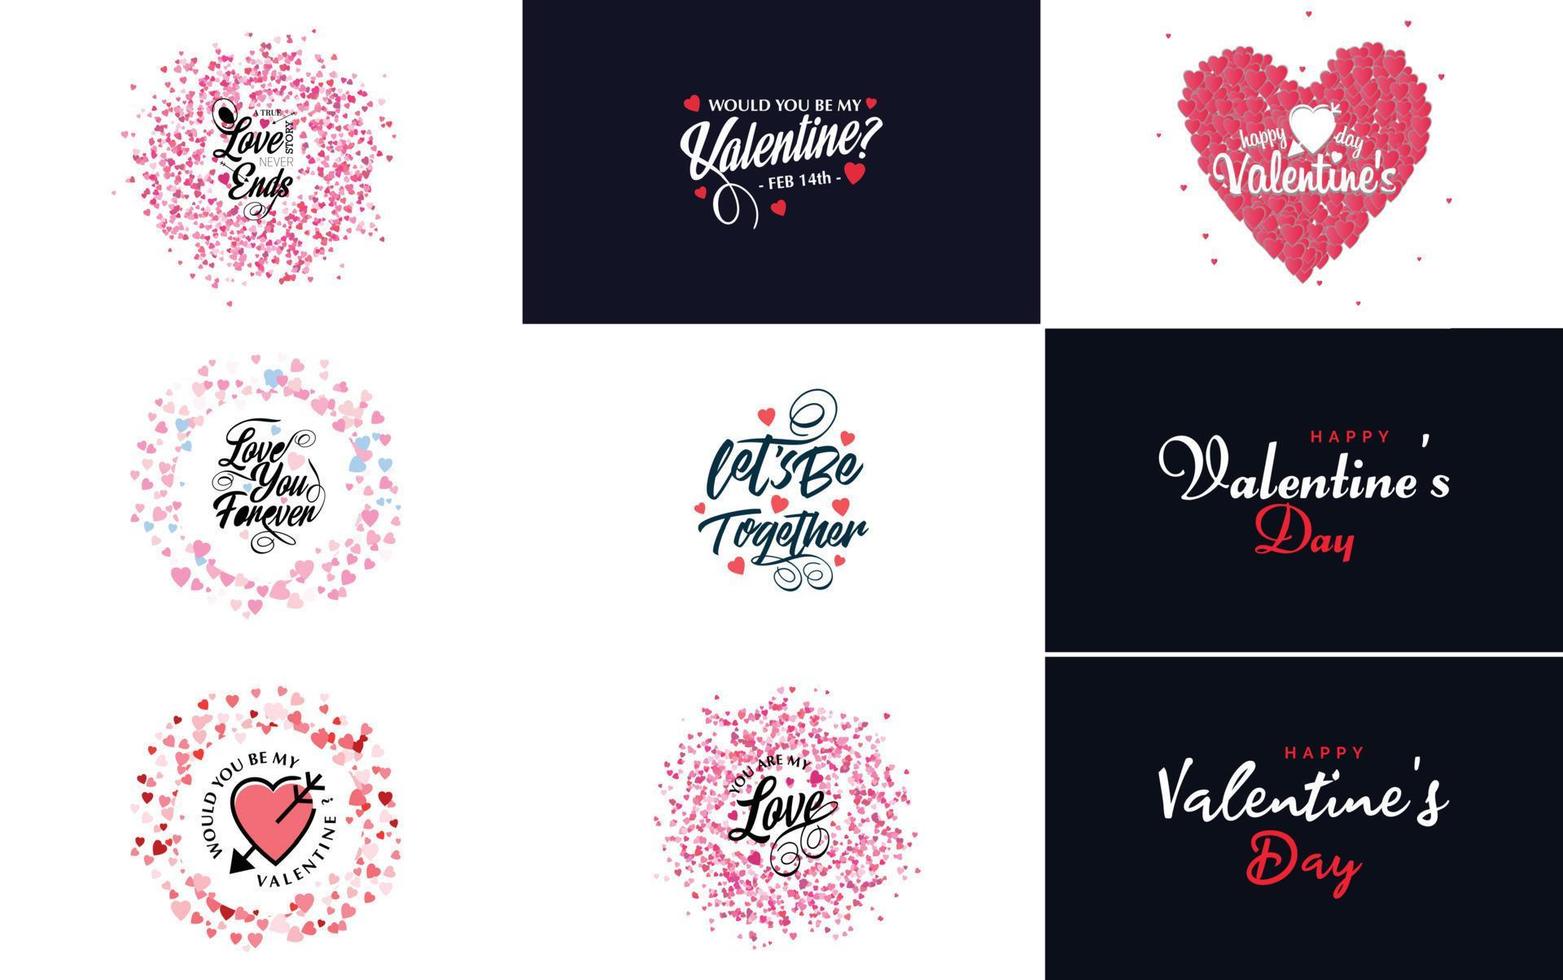 feliz diseño tipográfico del día de san valentín con un globo en forma de corazón y un esquema de color degradado vector